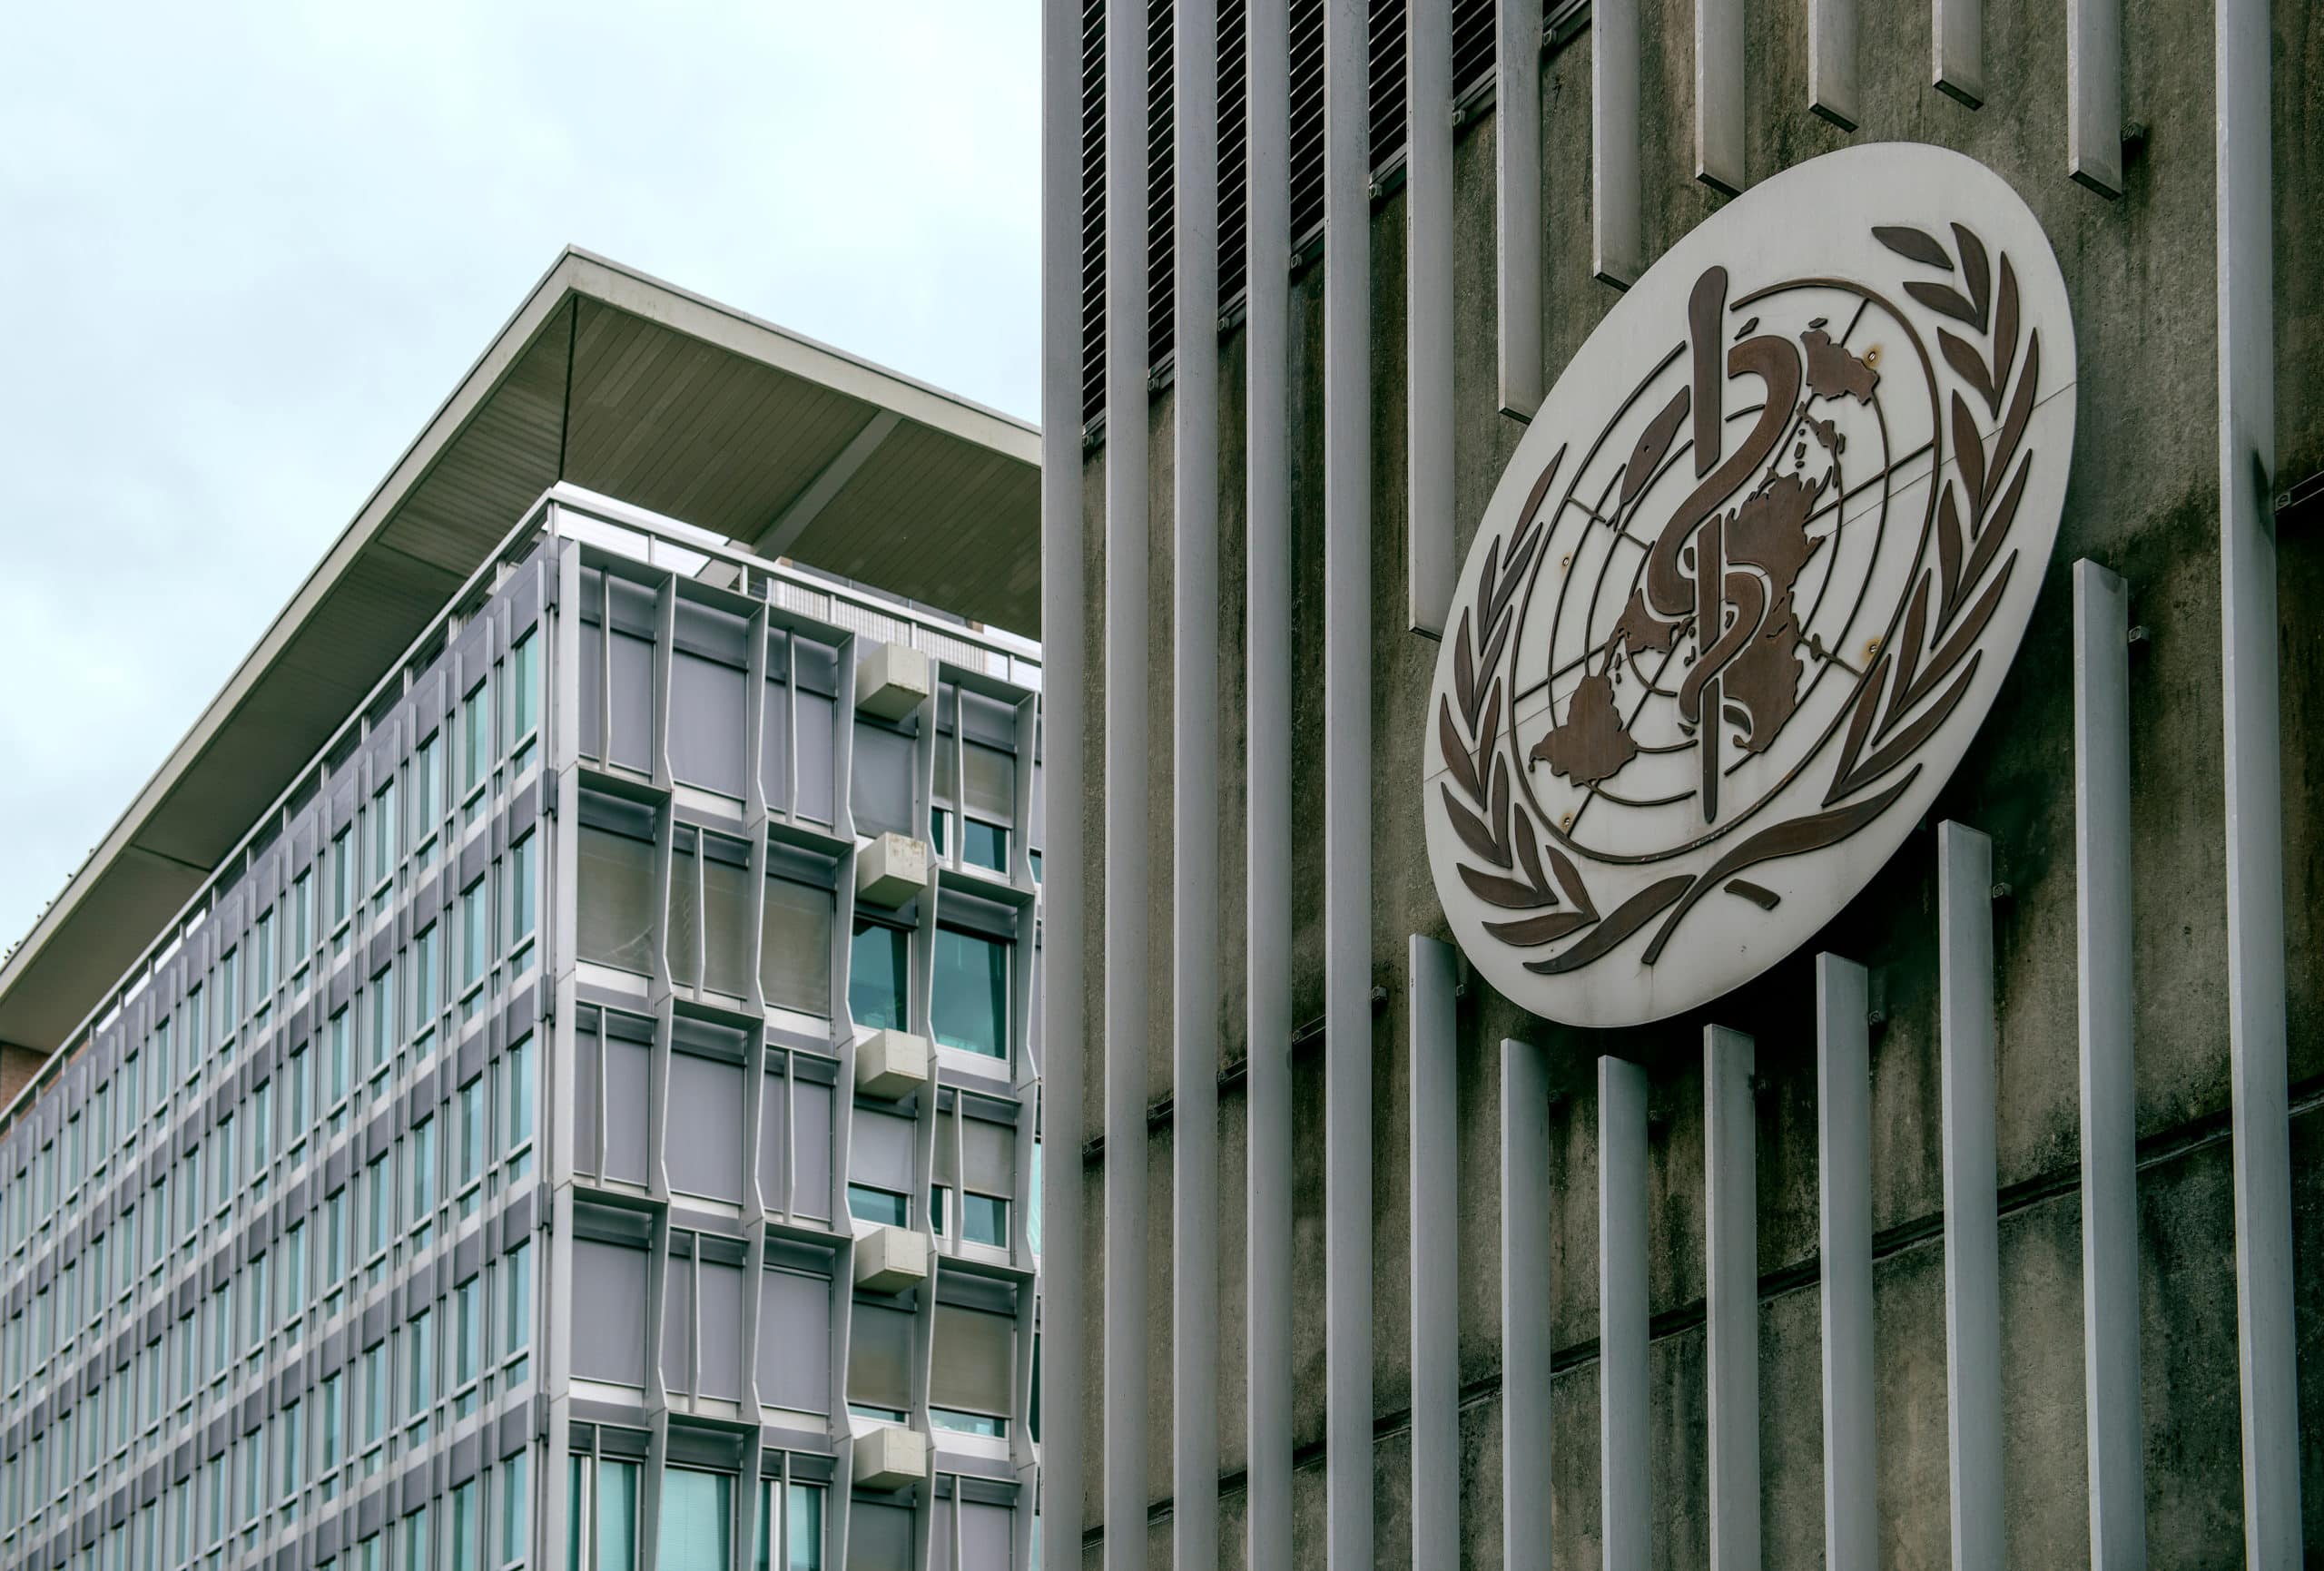 Siedziba Światowej Organizacji Zdrowia WHO w Genewie|normy who pm2.5 pm10|wytyczne WHO dwutlenek azotu